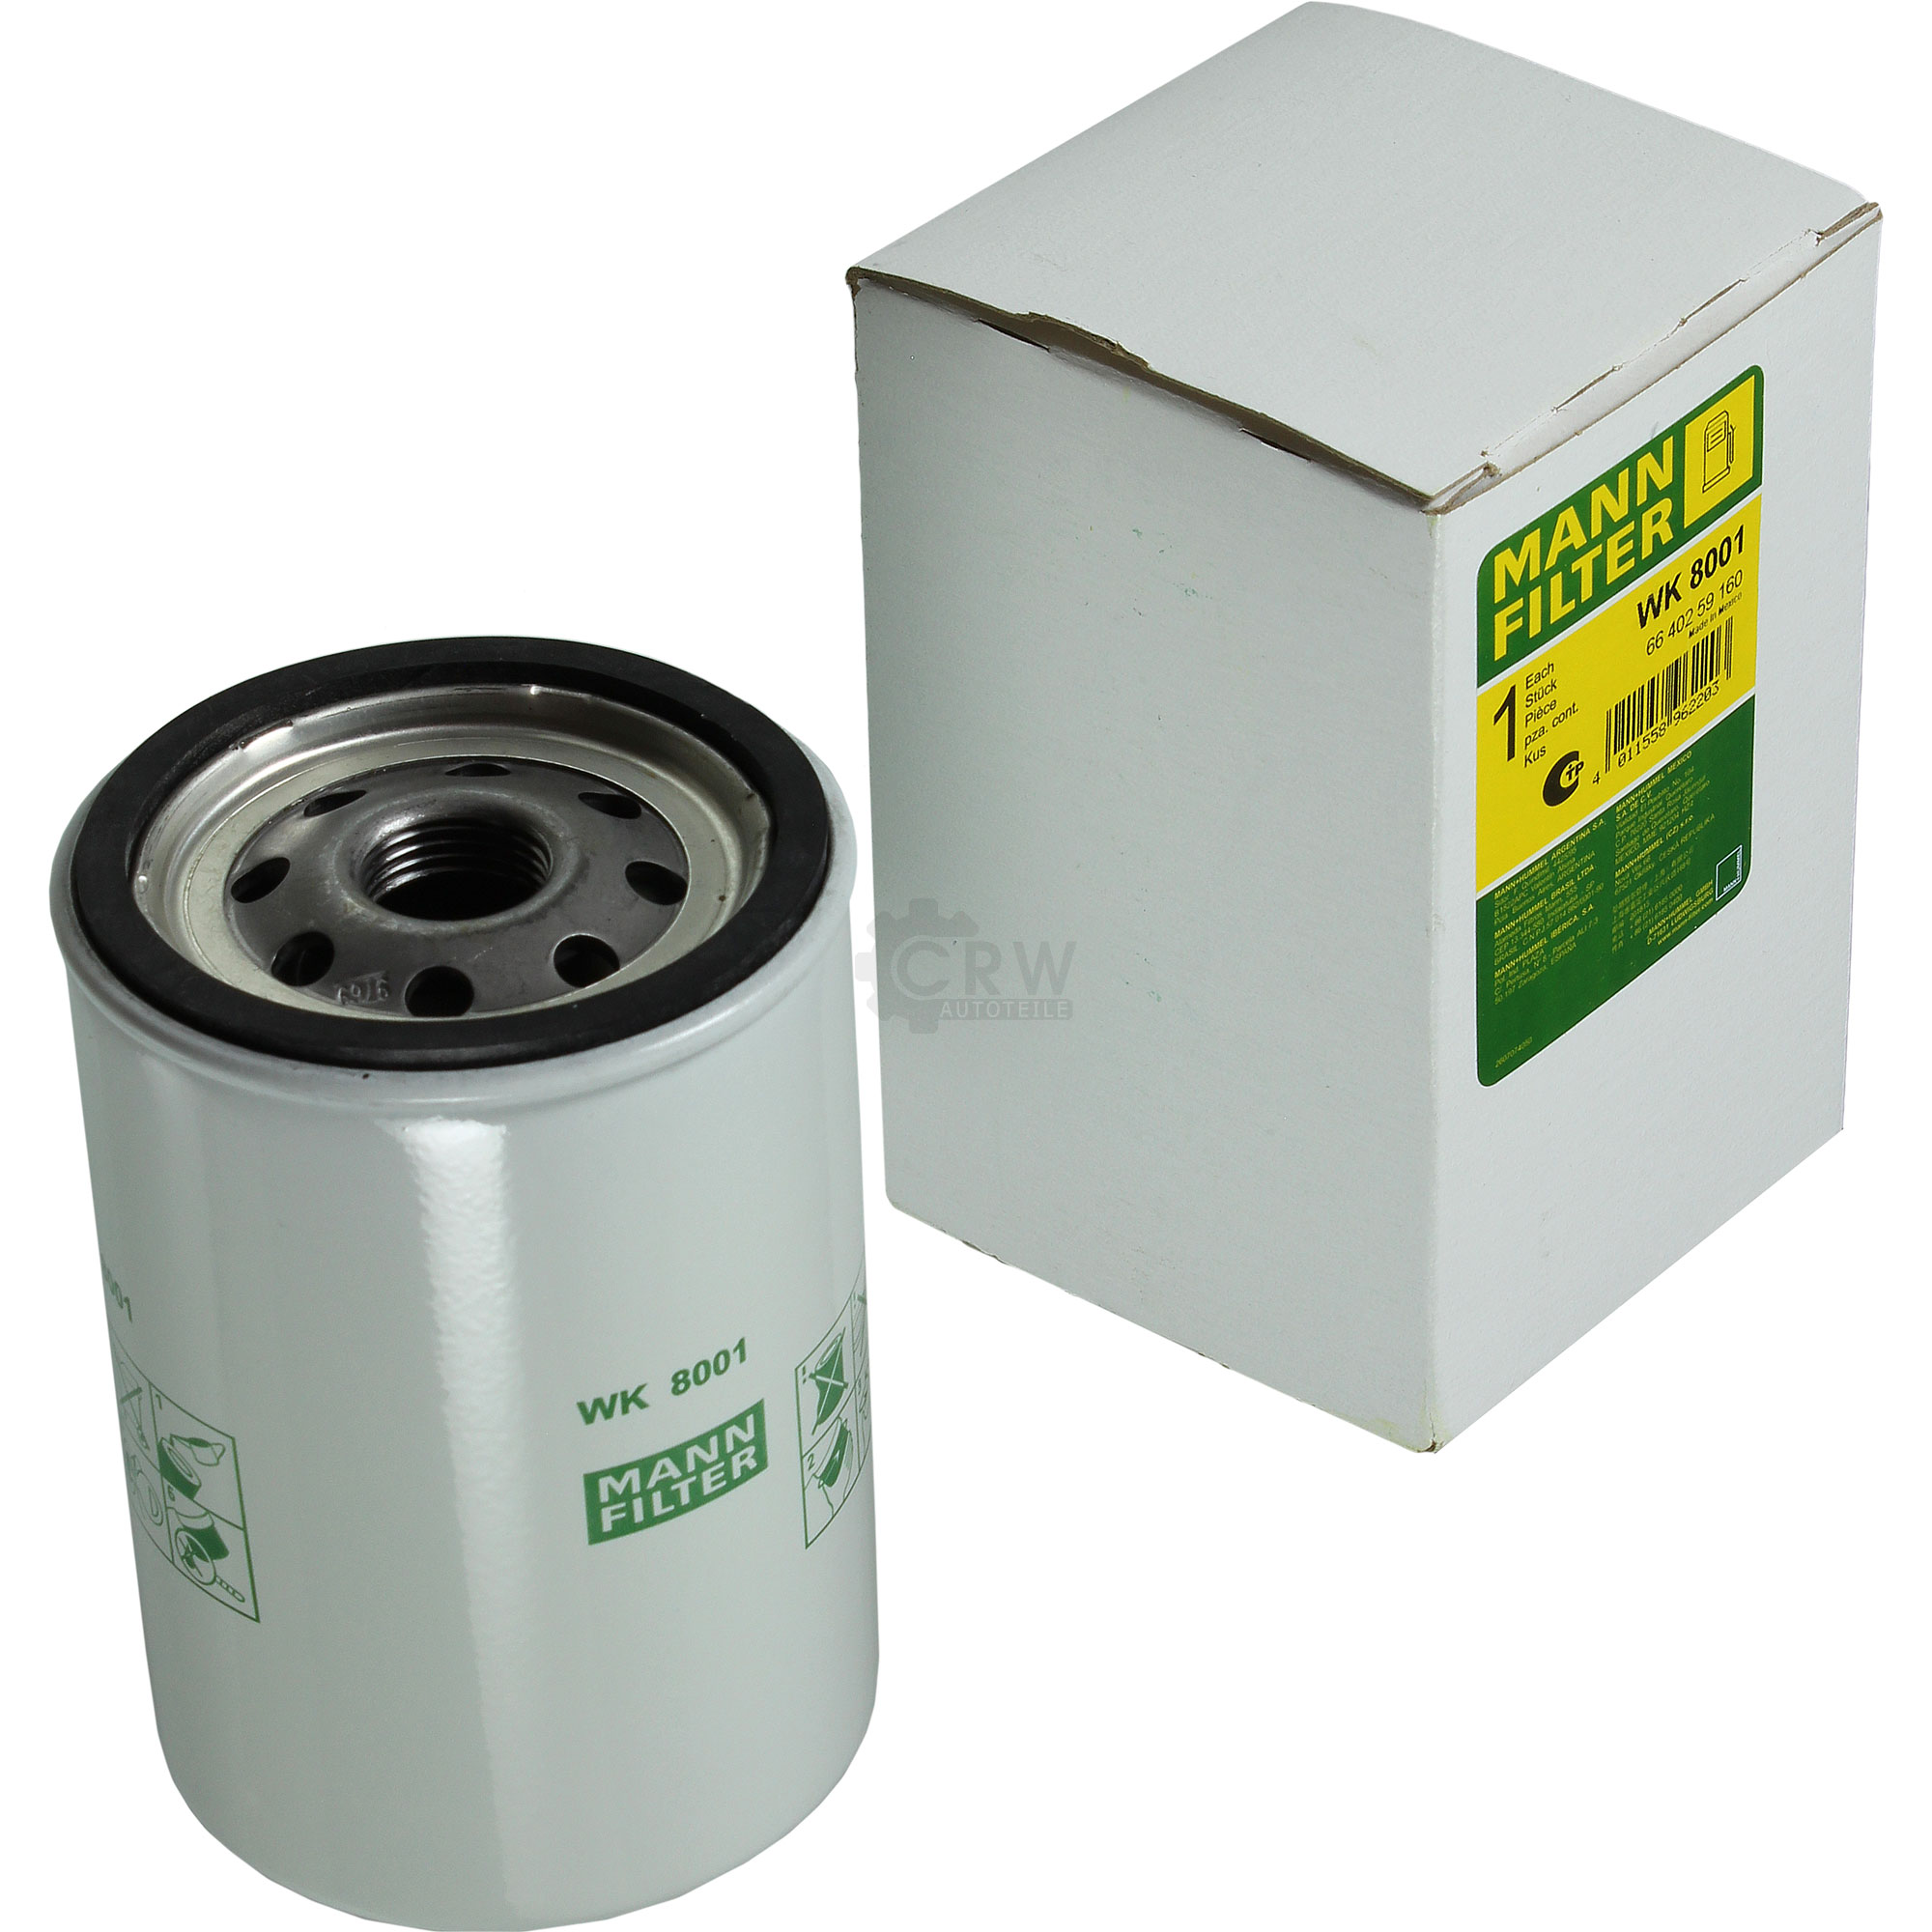 MANN-FILTER Kraftstofffilter WK 8001 Fuel Filter